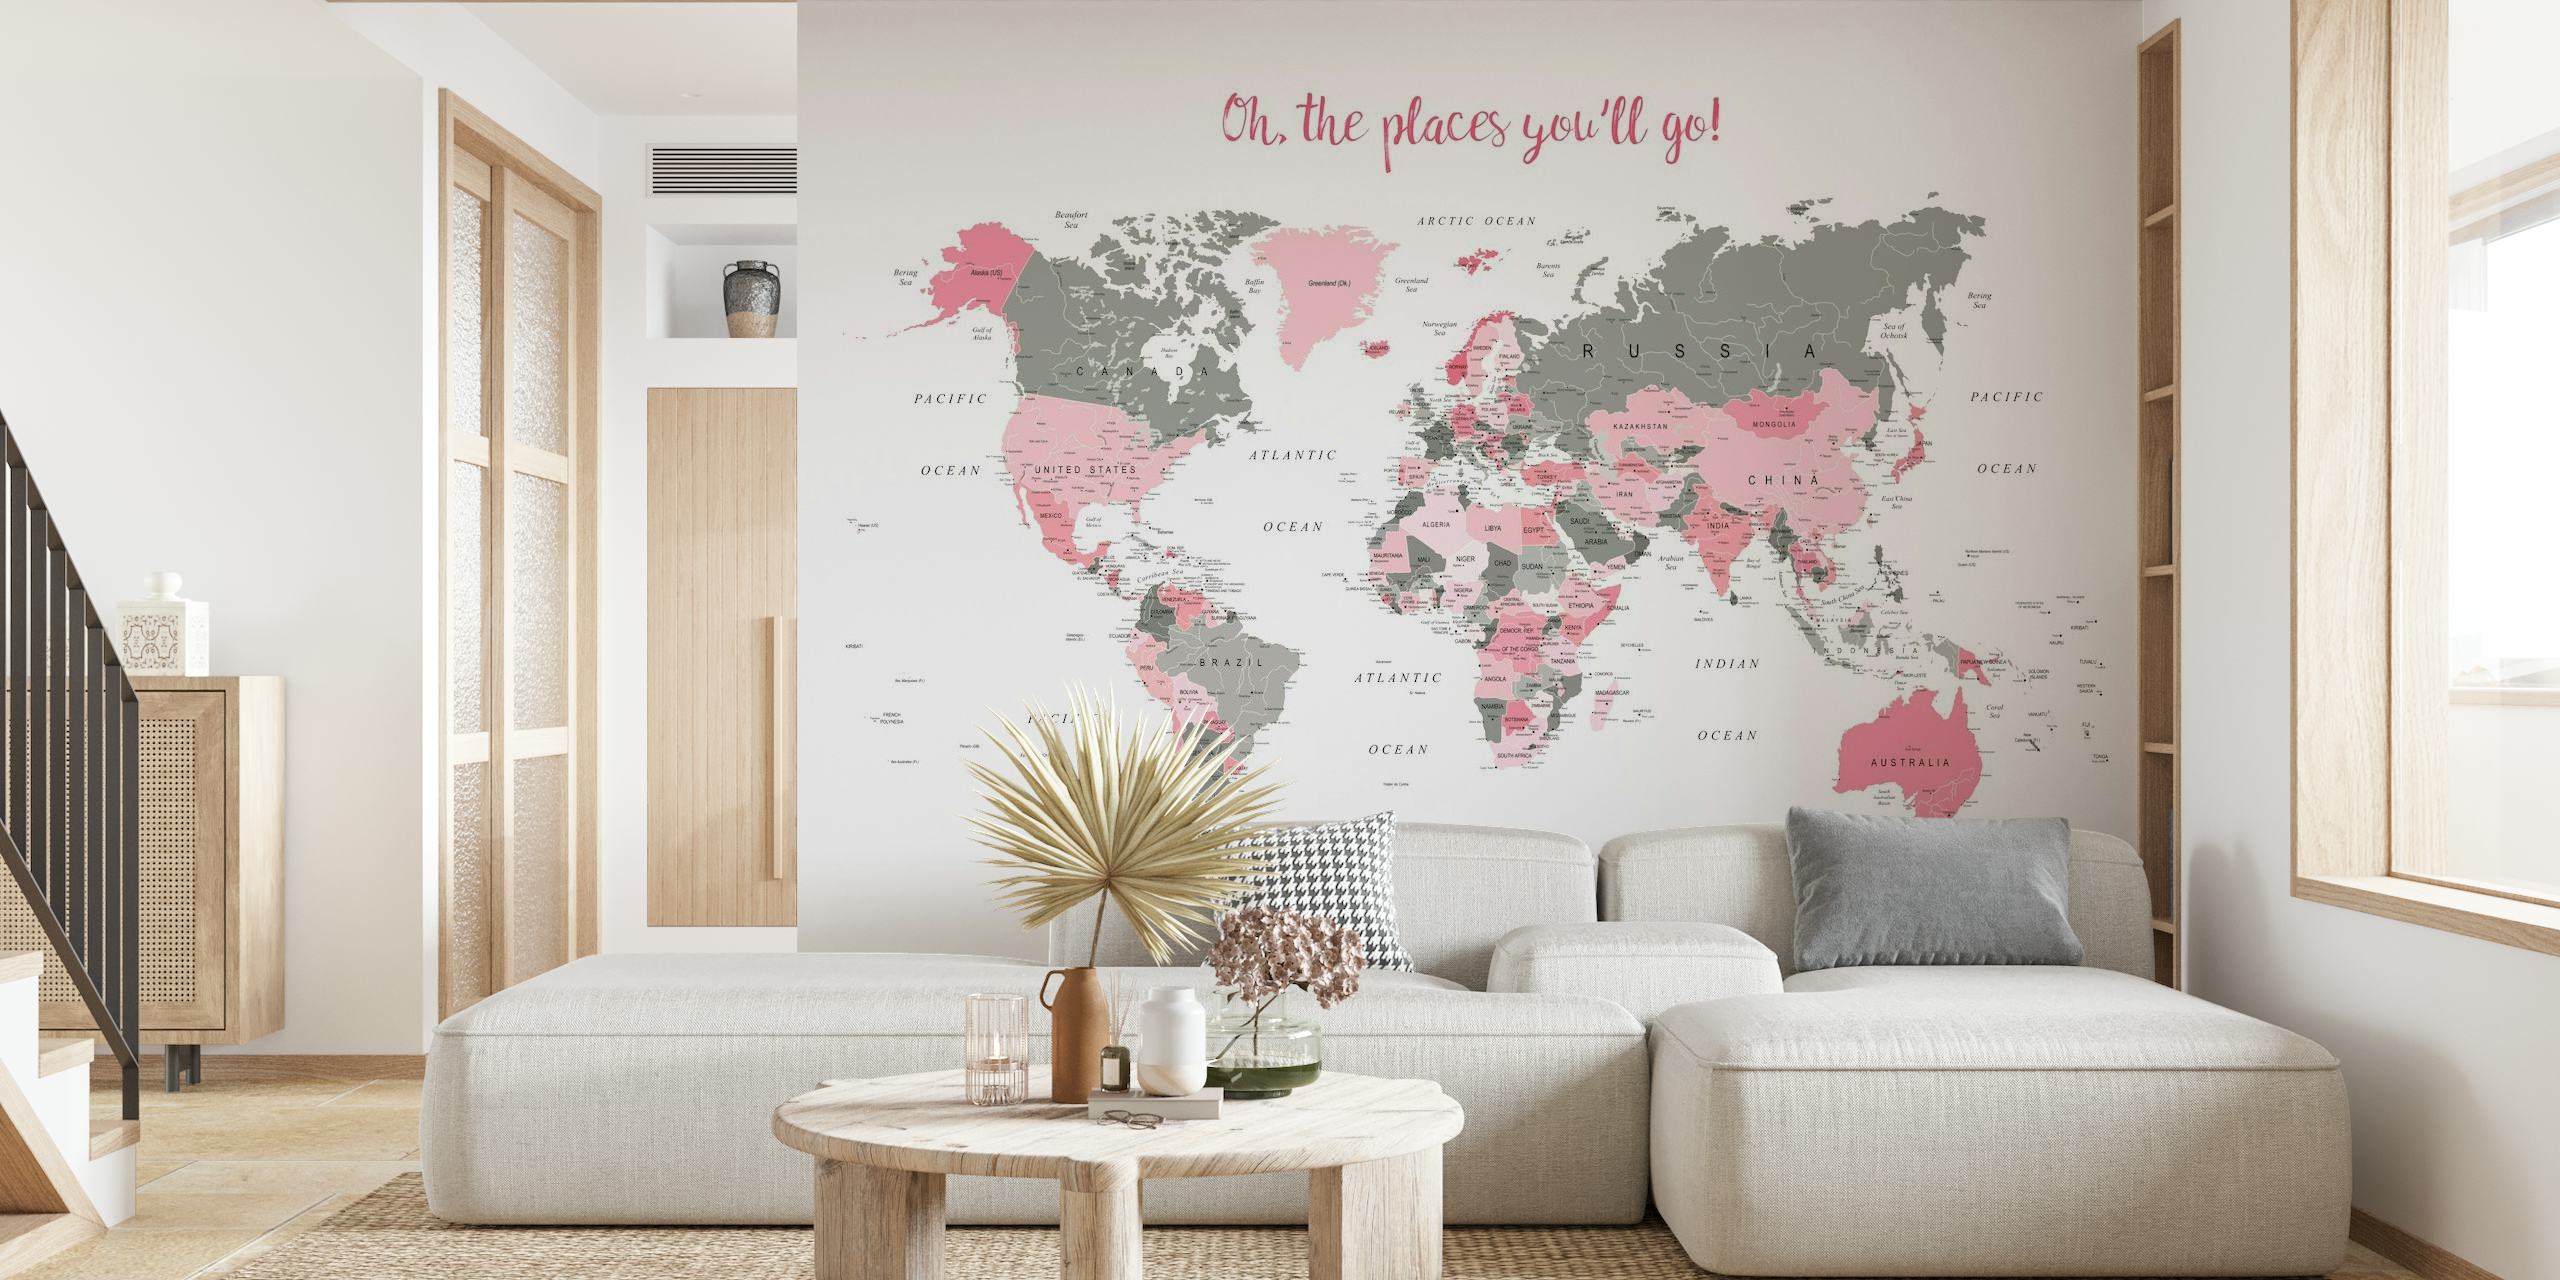 Stilvolles Wandbild mit Weltkarte, rosa Highlights und dem Satz „Oh The Places You‘ll Go!“ für die Inneneinrichtung.